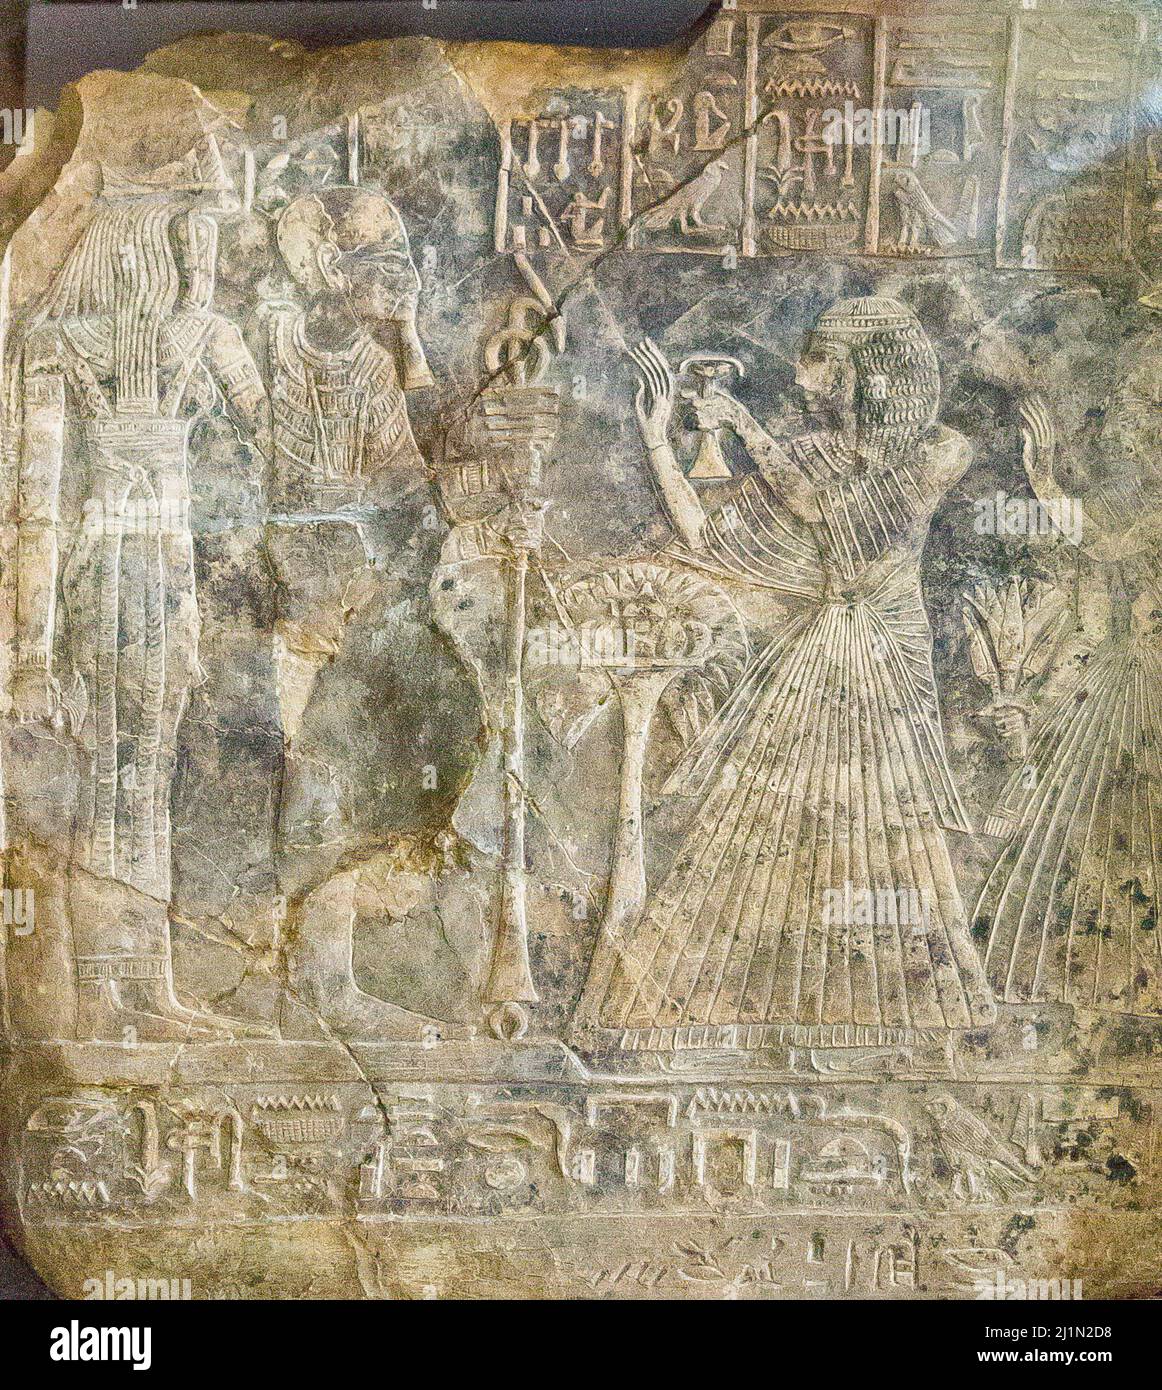 El Cairo, Museo Egipcio, de Medînet Habu. estela de Hor-Shery y su padre Amennakht. Adoran a Ptah y a la diosa cabeza de serpiente Meretseger. Foto de stock